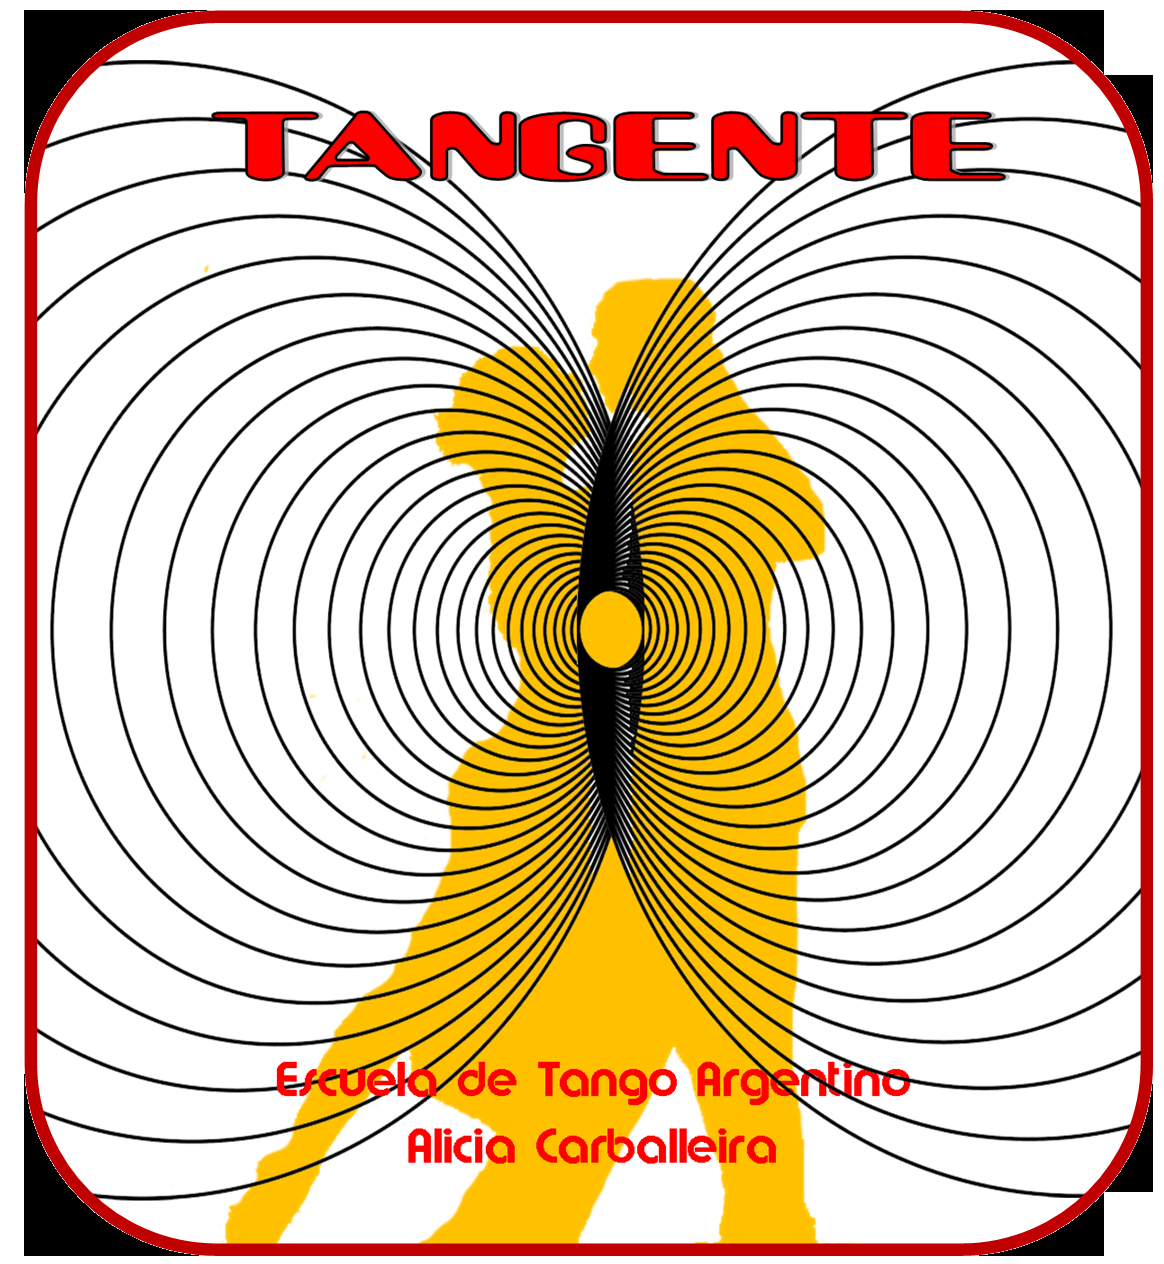 Tangente - Escuela de Tango Argentino Alicia Carballeira